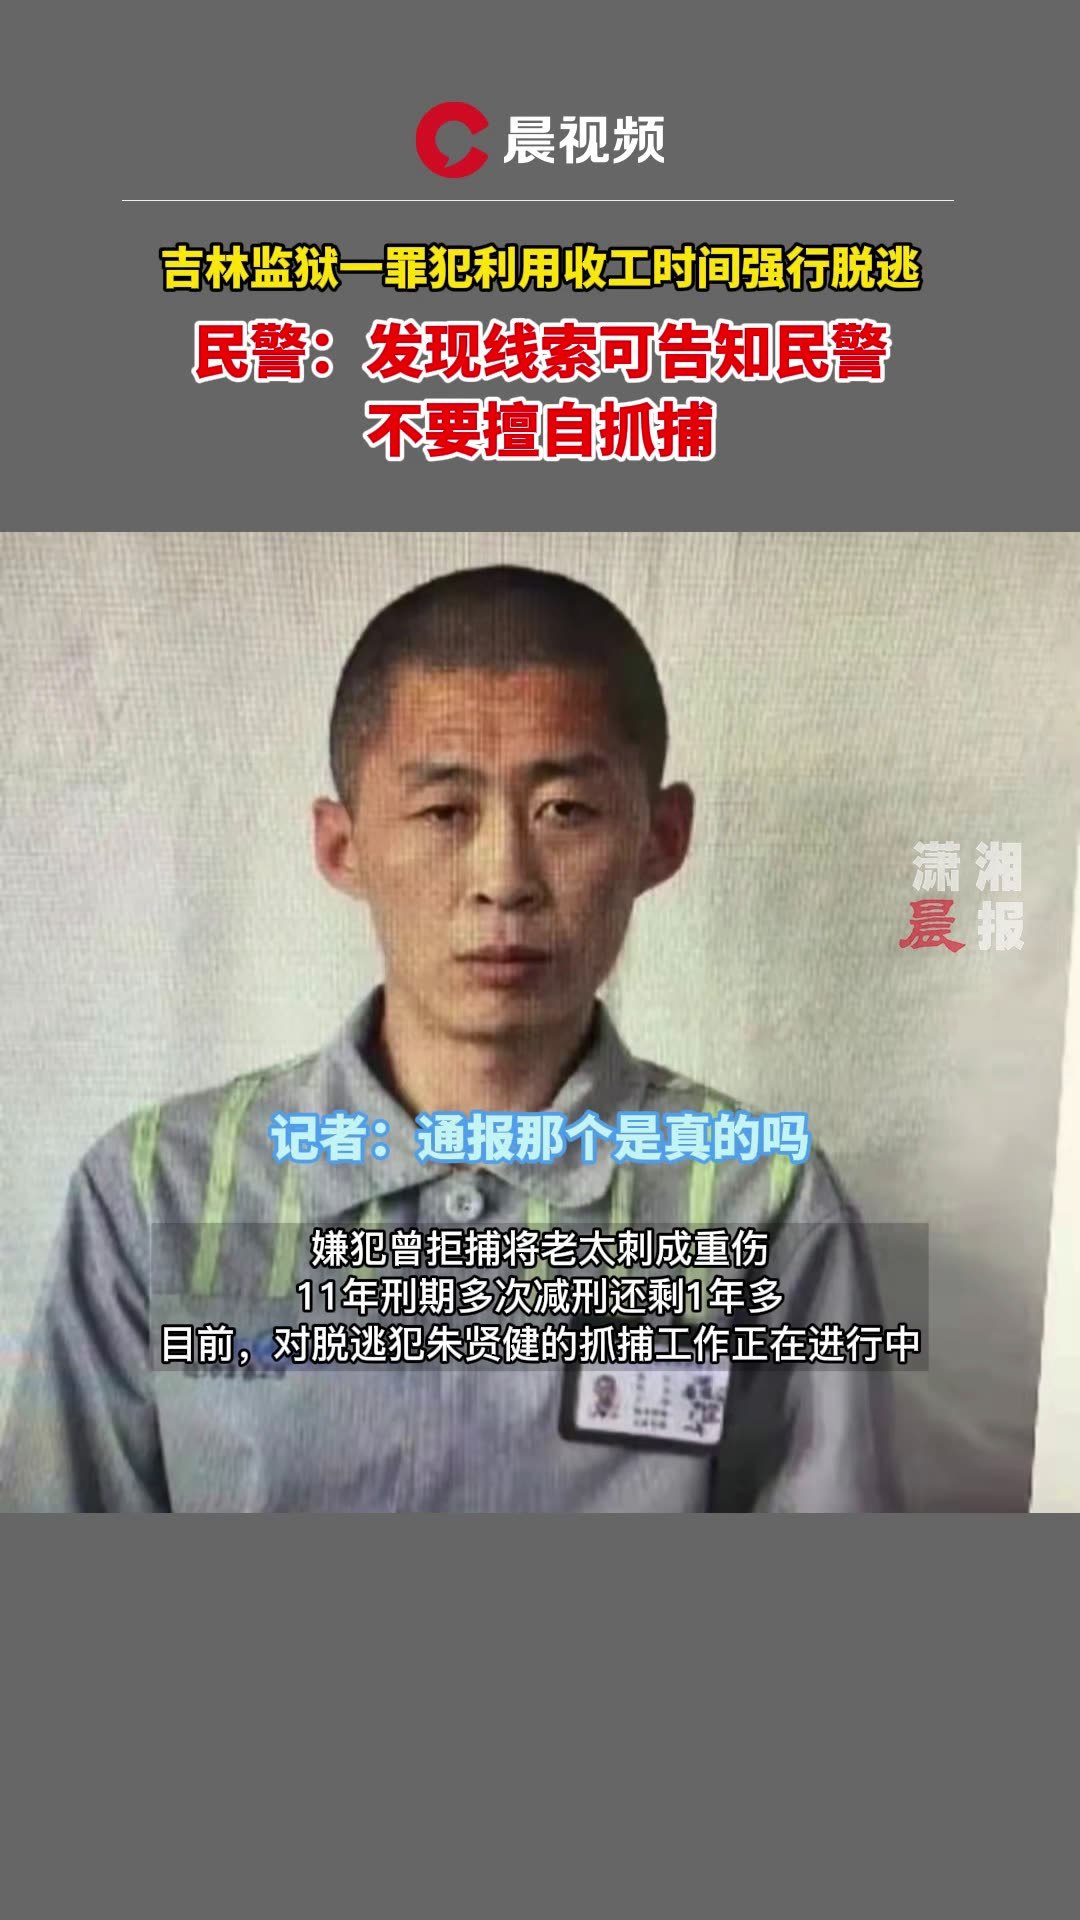 35年前姐妹俩草场被奸杀，堂姐夫被判死缓坐牢21年，内蒙古高院宣判其无罪，“我整个青春都耗在监狱里了…”_凤凰网视频_凤凰网